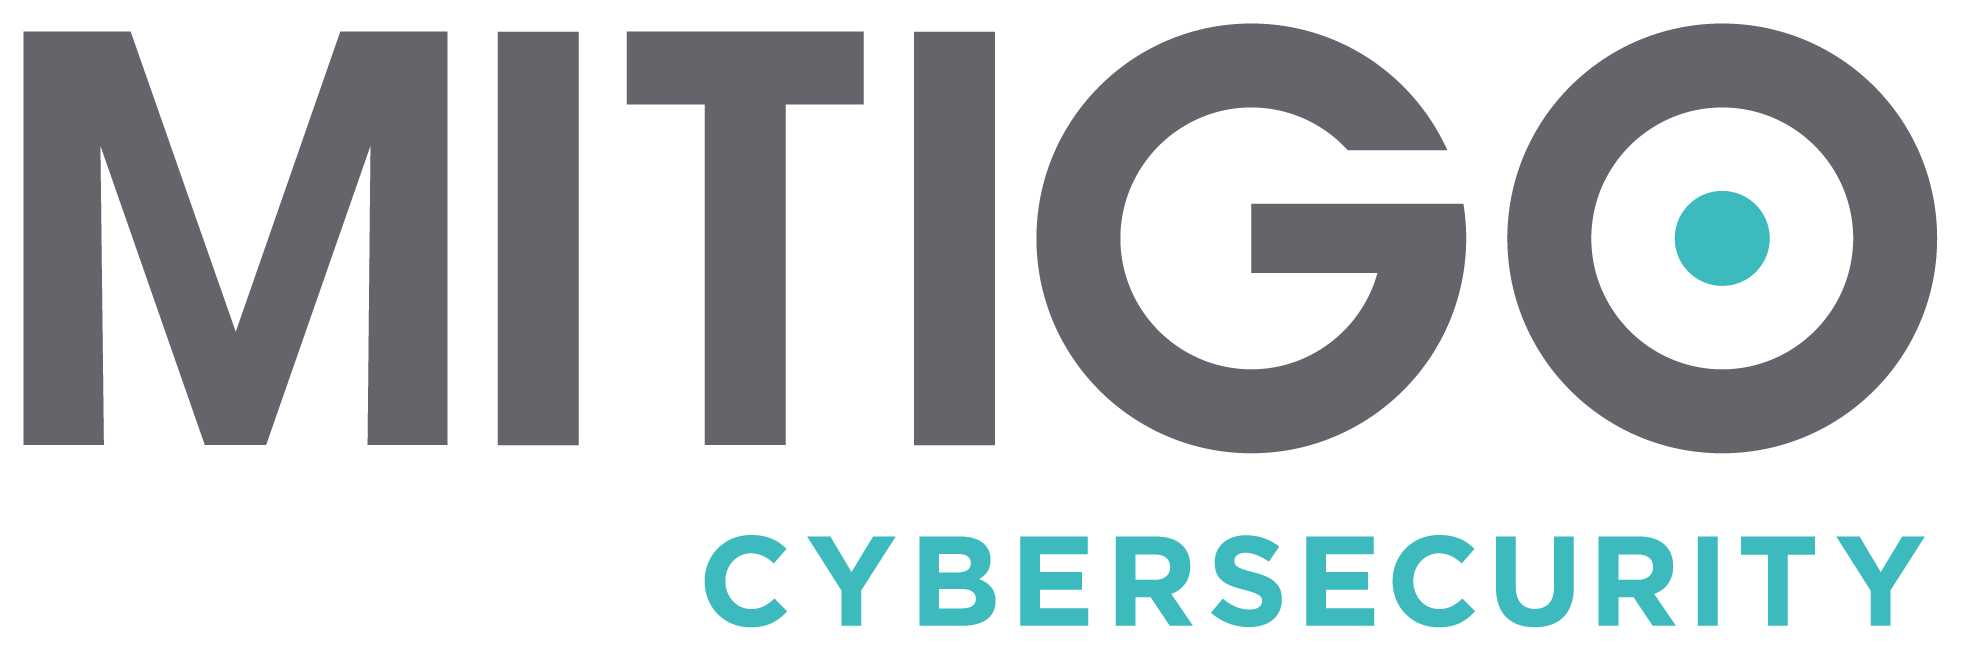 Mitigo Cybersecurity - transparent 2